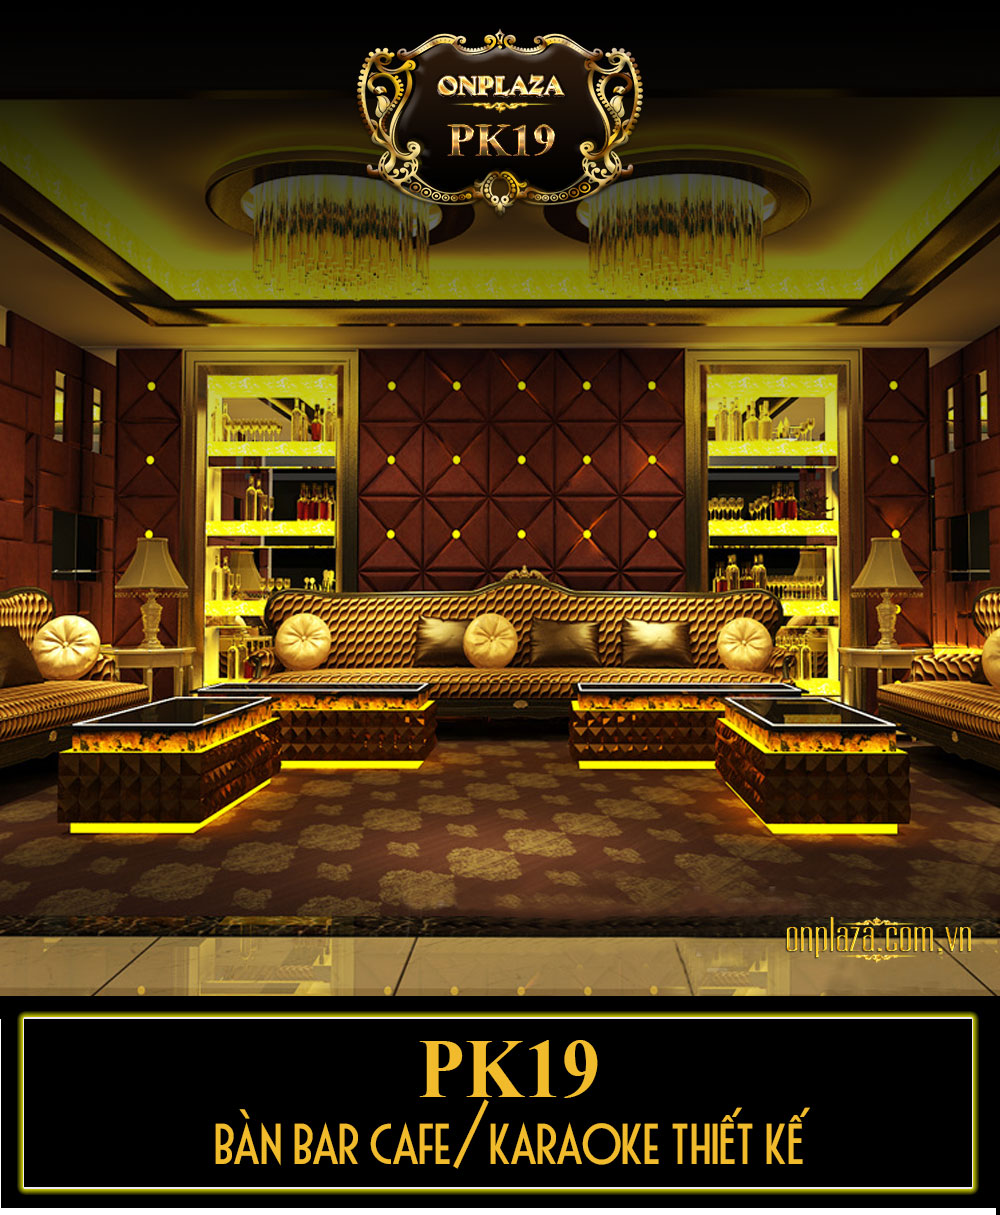 Bàn bar cafe/karaoke thiết kế sang trọng hiện đại PK19